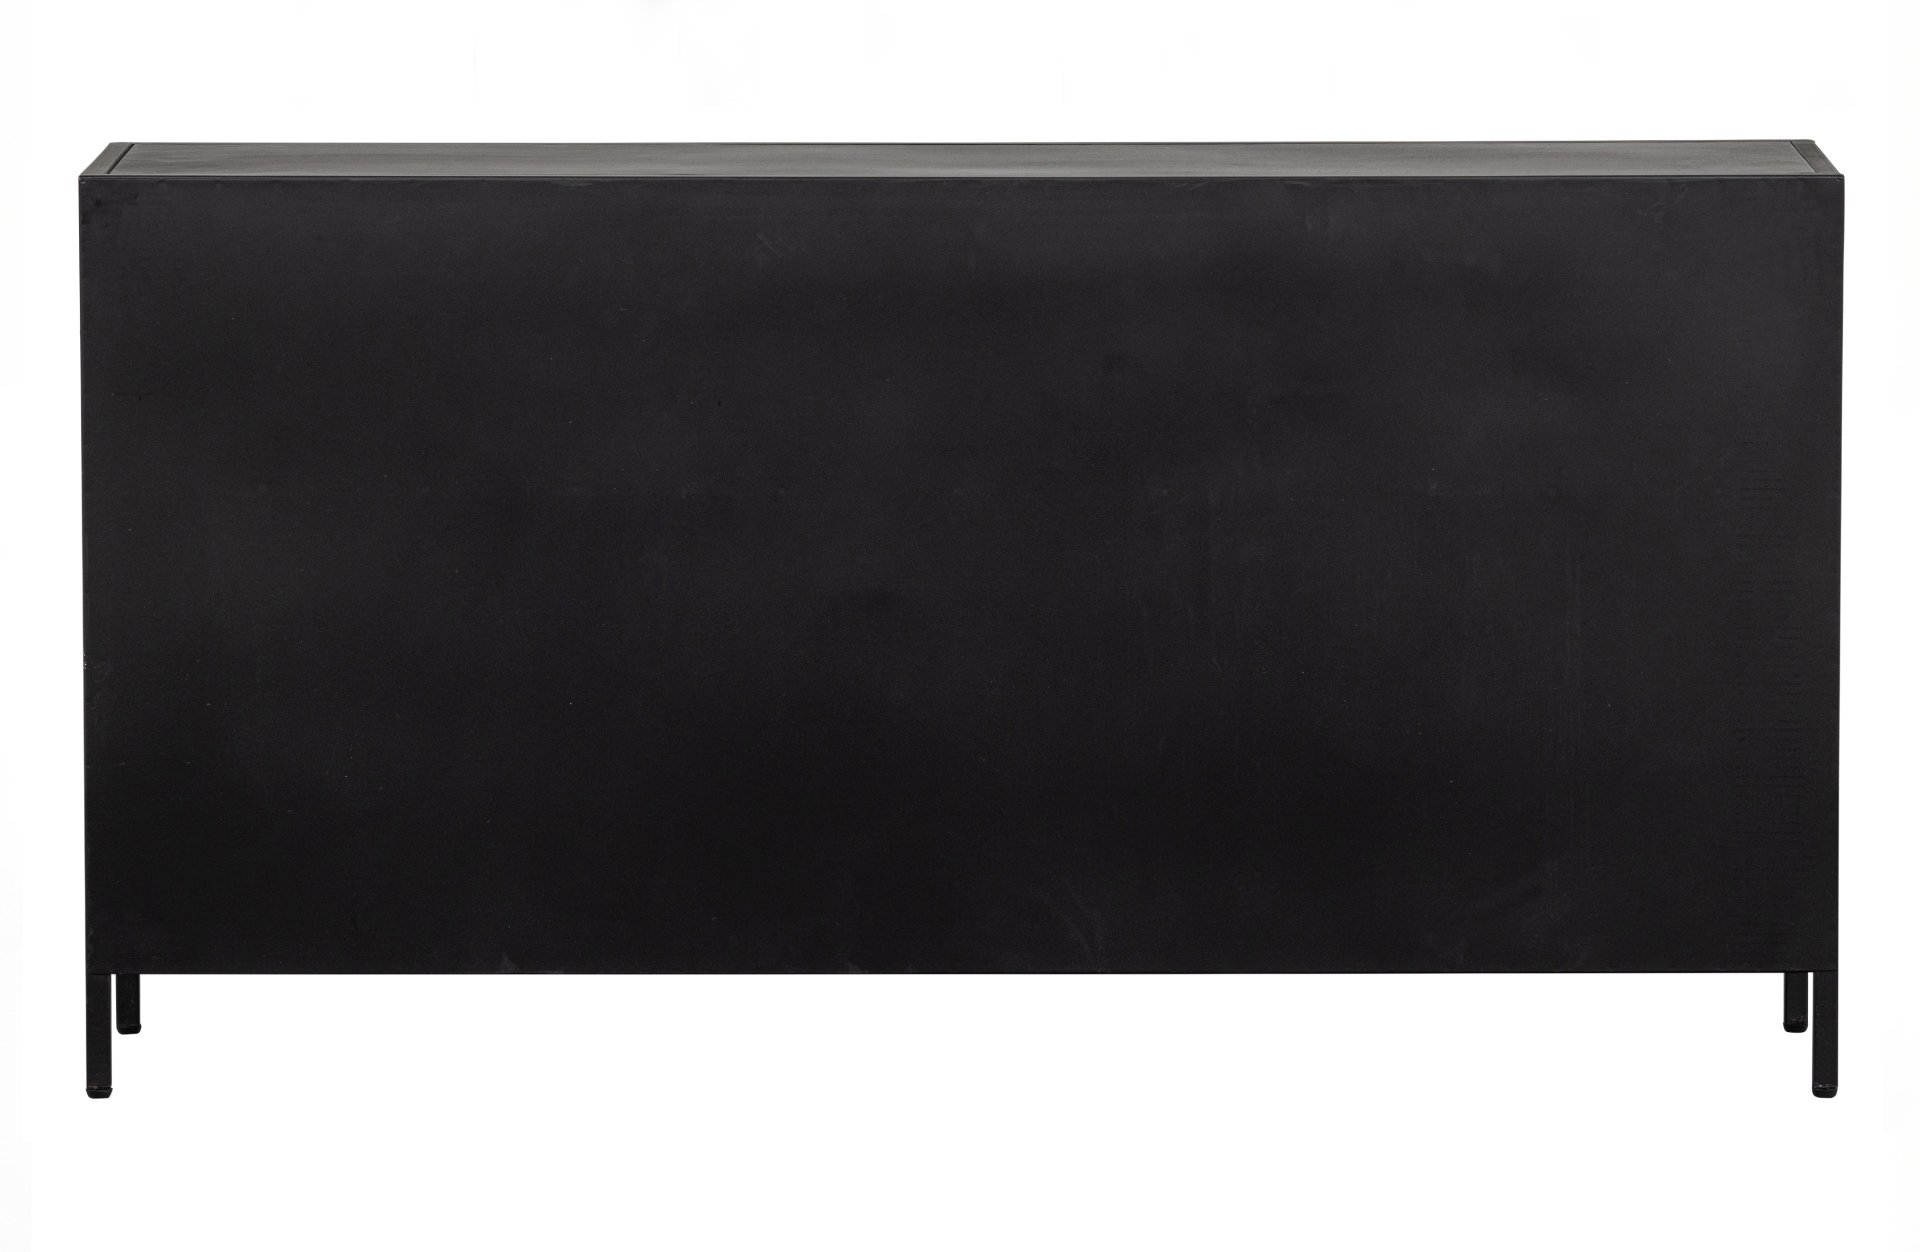 Das Sideboard Ronja überzeugt mit seinem industriellem Design. Gefertigt wurde es aus Metall, welches einen schwarzen Farbton besitzt. Die Türen sind aus Metall und Glas. Die Vitrine verfügt über drei Türen.